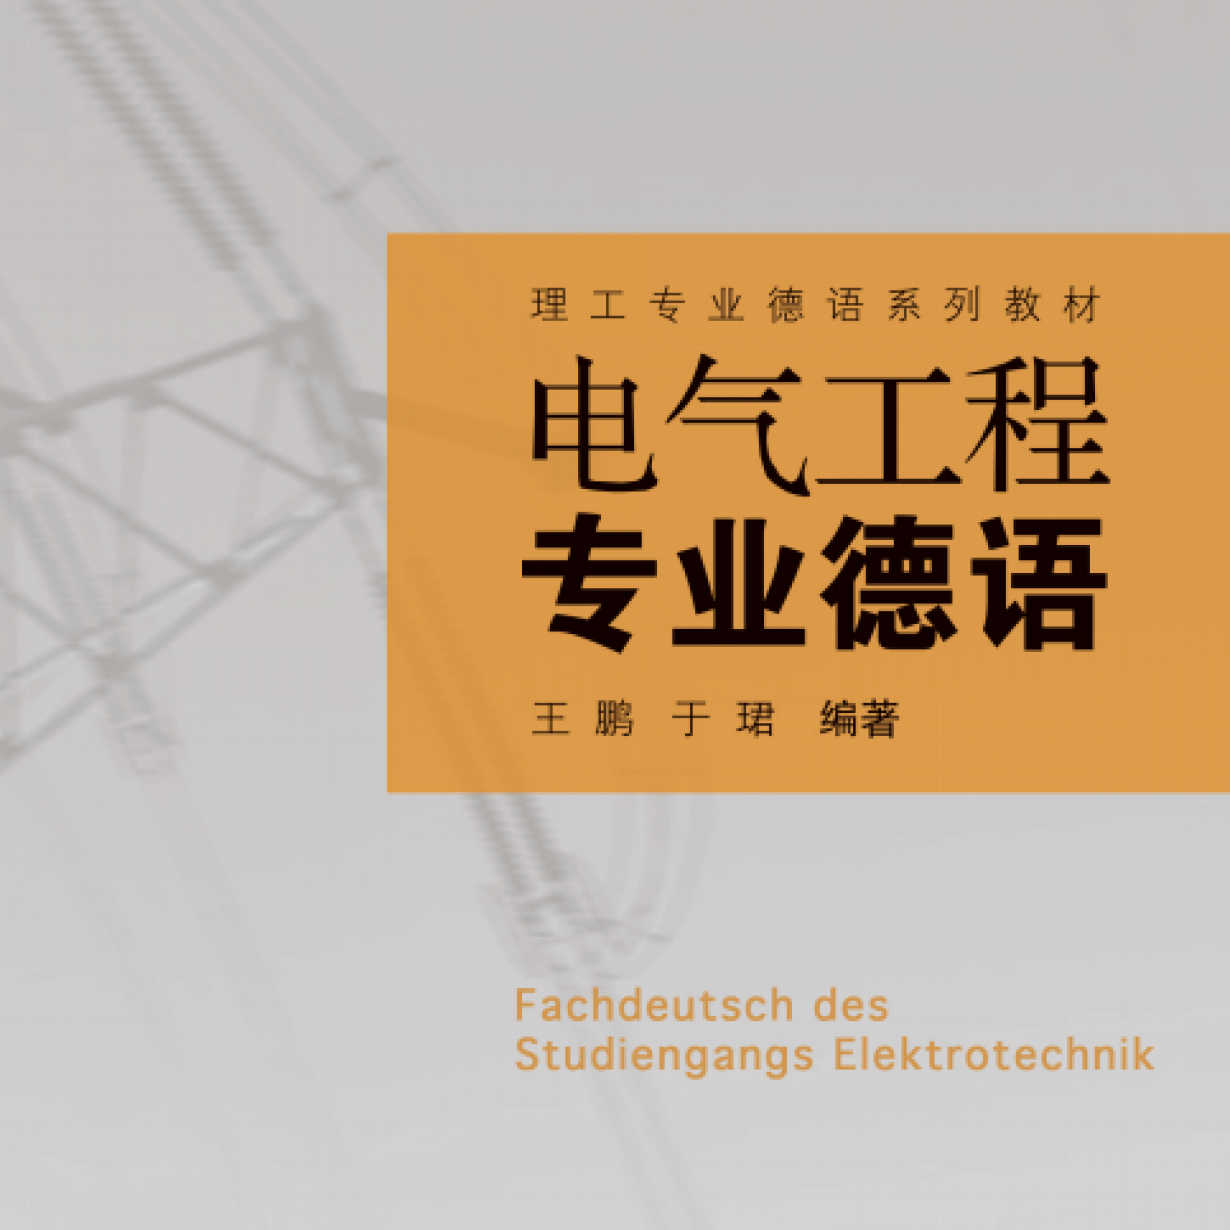 【音频】电气工程专业德语.mp3